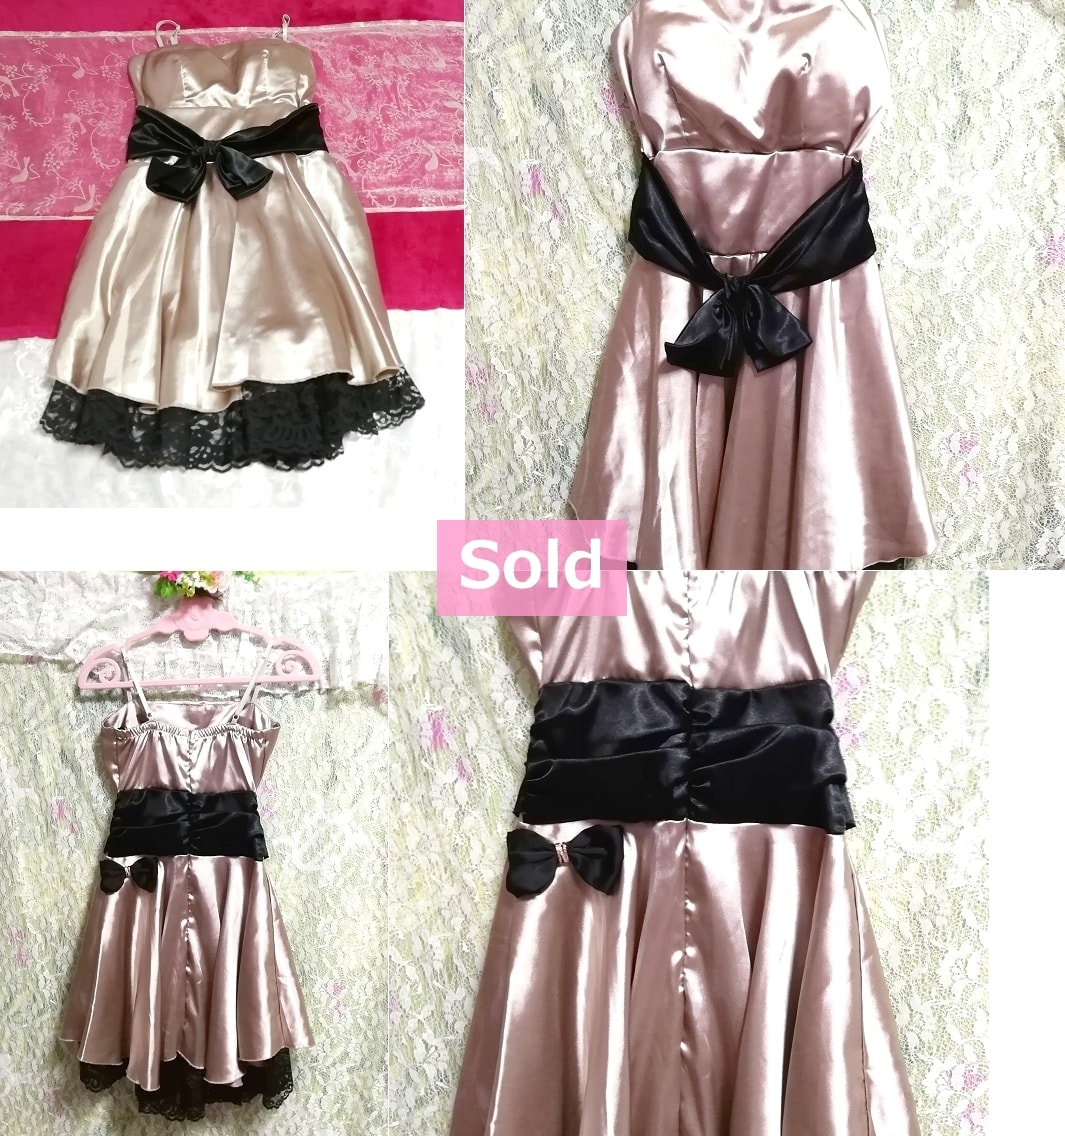 핑크 샴페인 컬러 광택 블랙 레이스 리본 원피스 드레스 핑크 샴페인 컬러 광택 블랙 레이스 리본 원피스 드레스